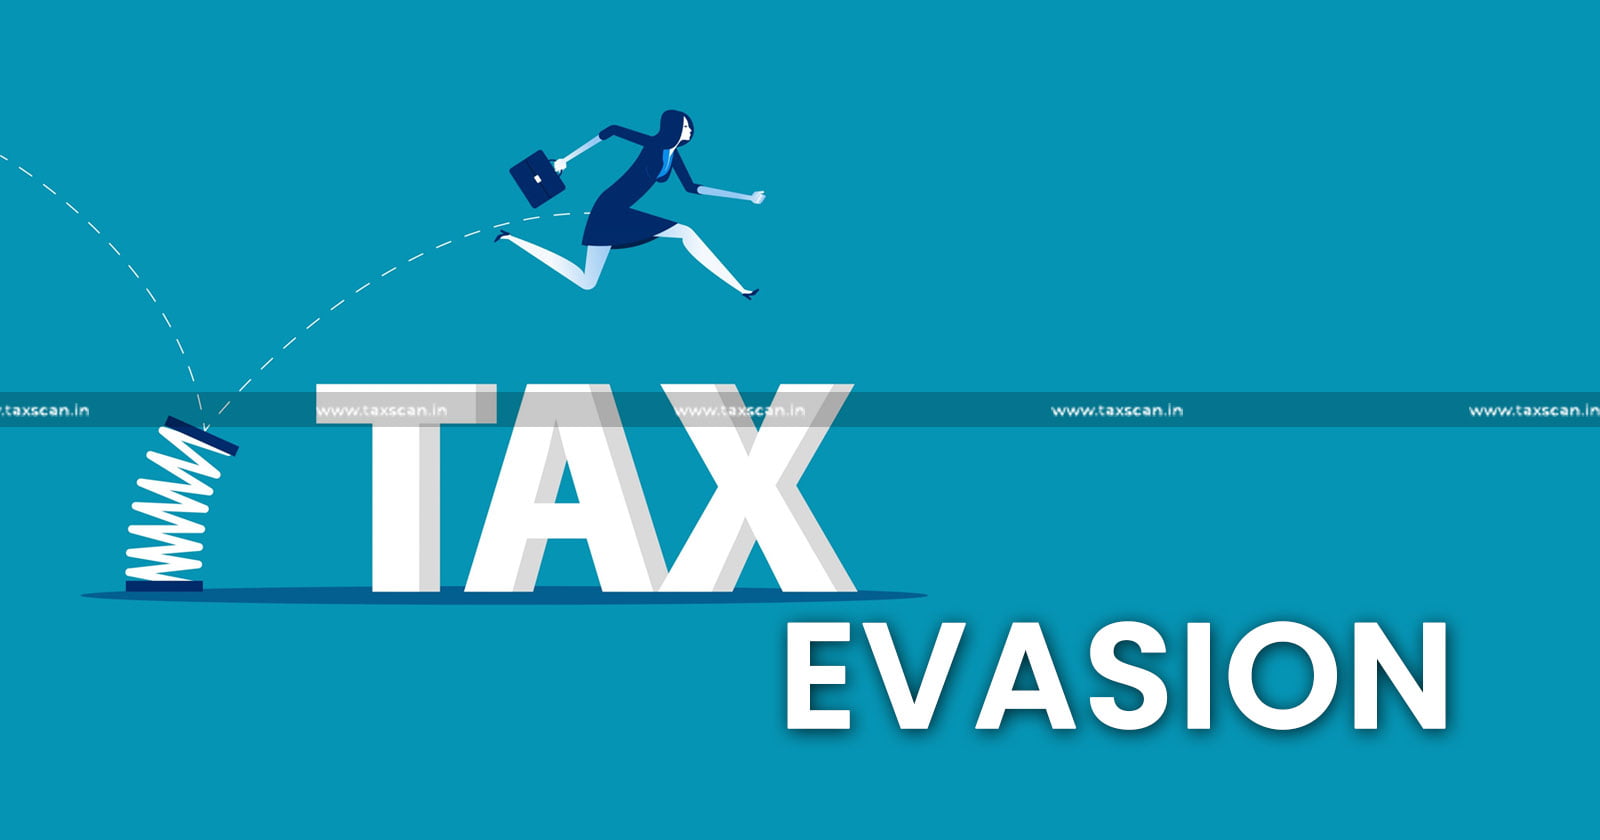 Tax Evasion - CGST Raipur - Fake Firms - tascan